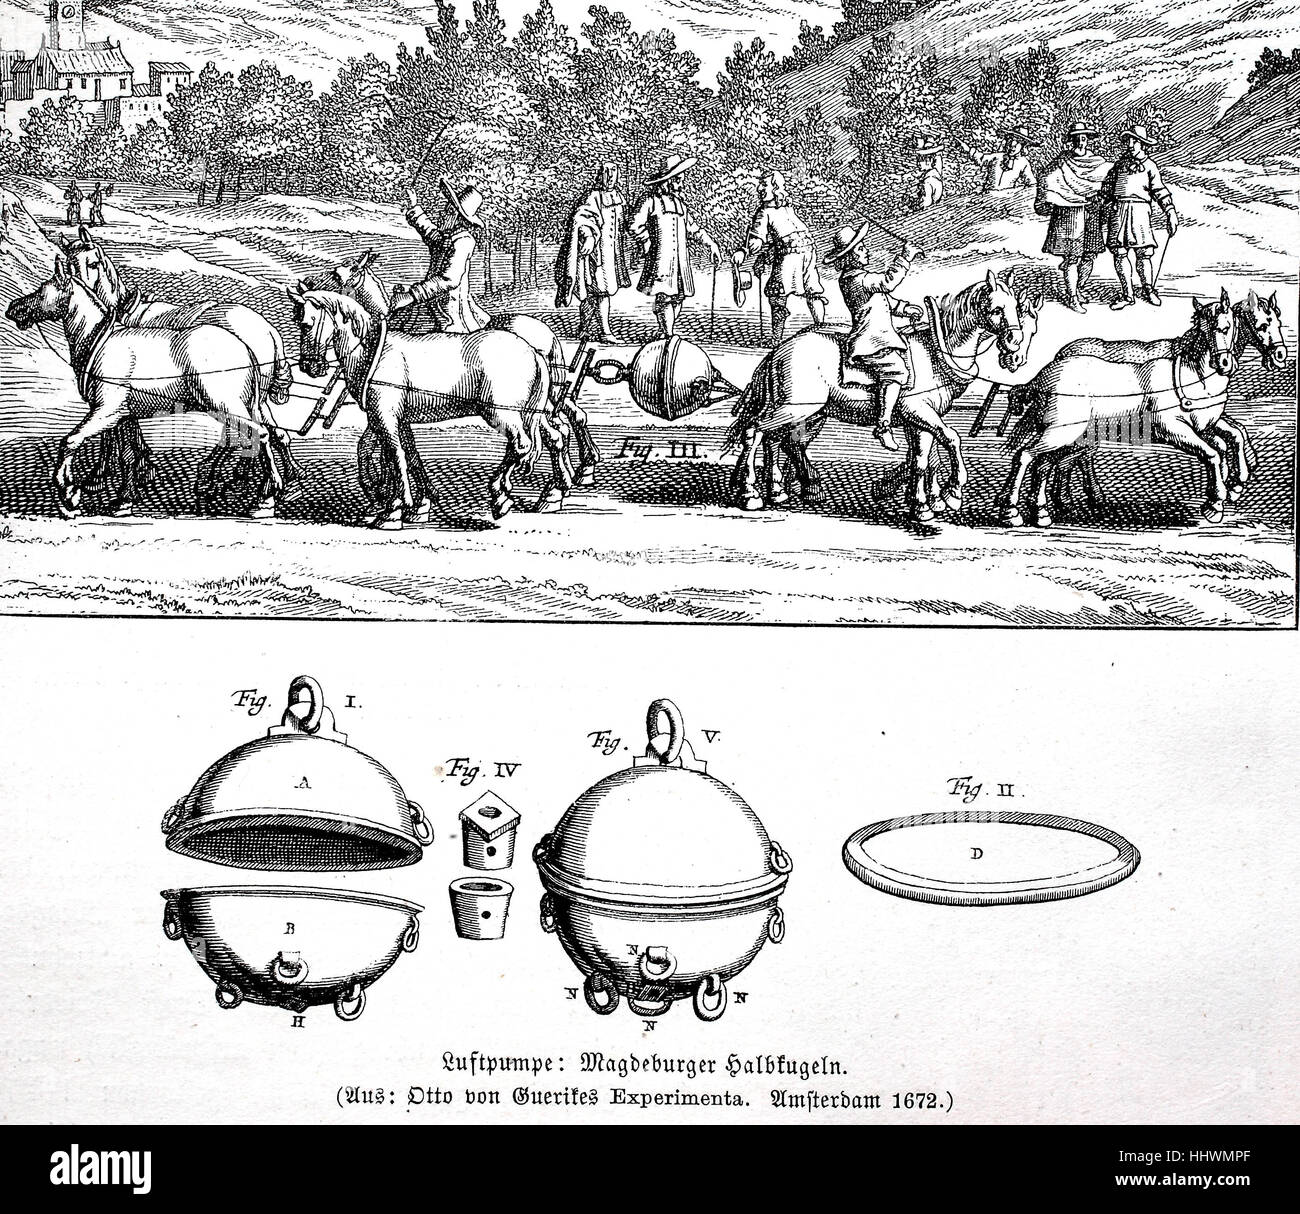 Los experimentos sobre la presión del aire con la Magdeburger Halbkugeln, Ilustración de Otto von Gericke's Experimenta, 1672, caballos trató en vano de desgarrar a dos airless, bombea hemisferios de latón, Alemania, imagen histórica o ilustración, publicado 1890, digital mejorado Foto de stock